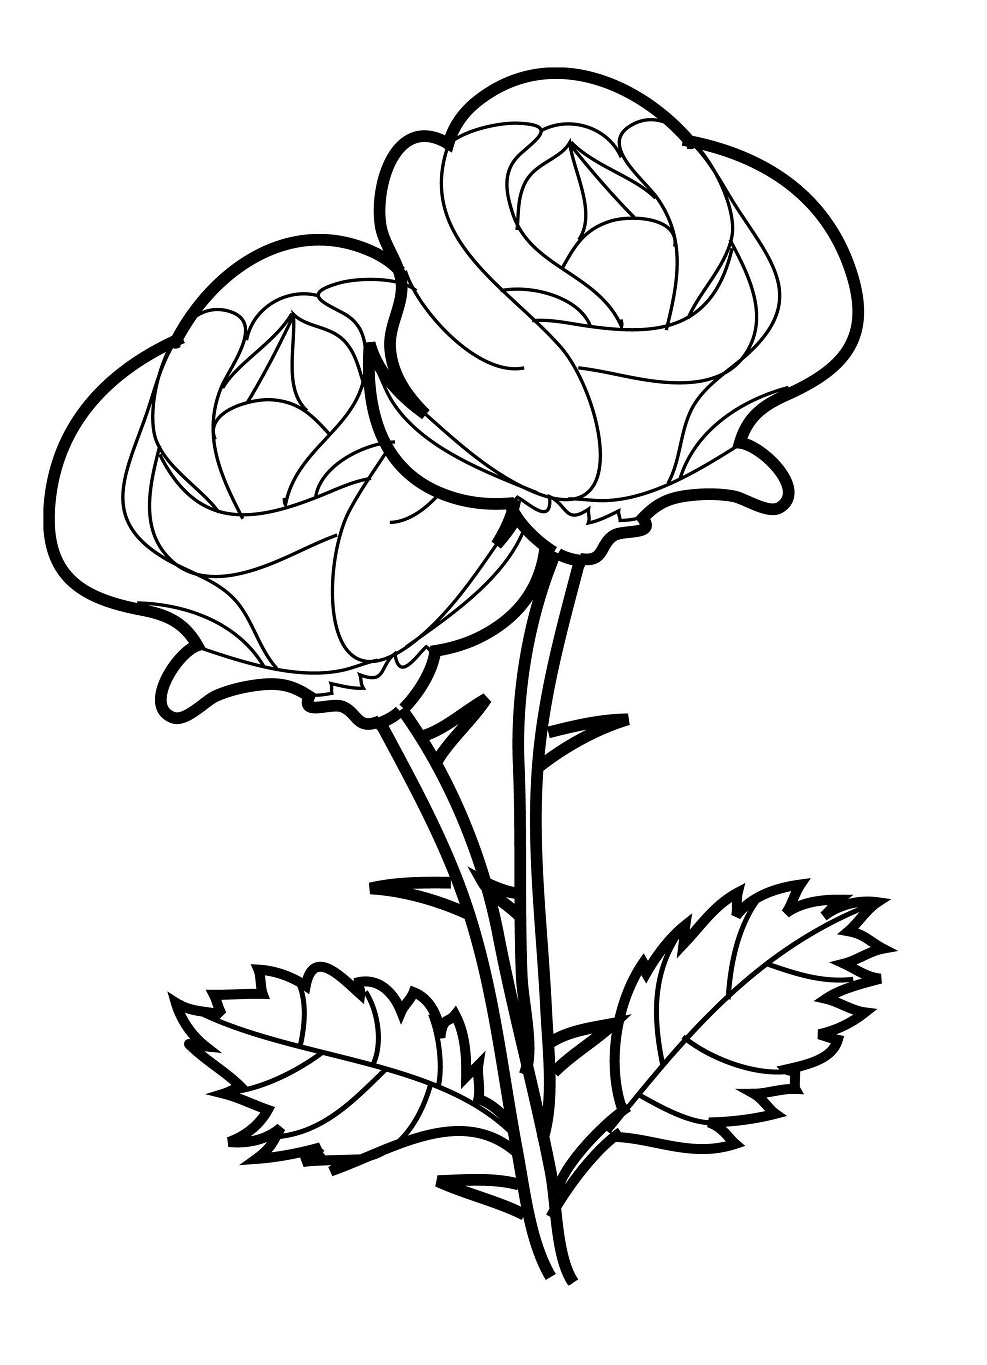 Gambar Sketsa Bunga Mawar Hitam Putih Garlerisket